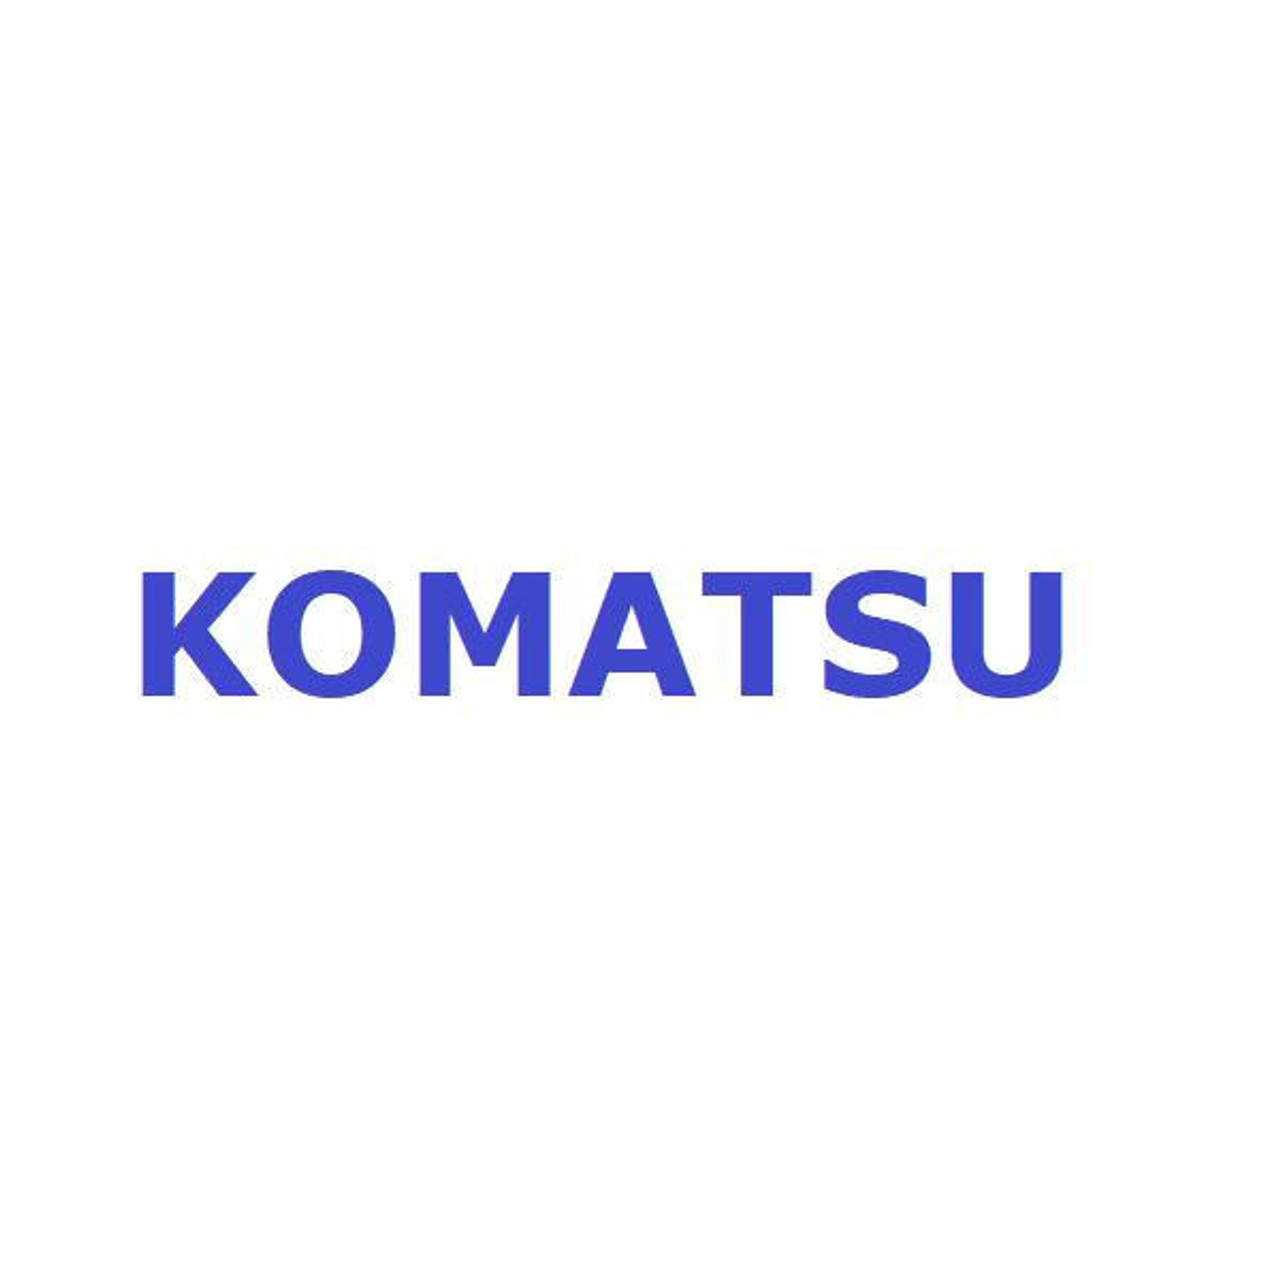 Komatsu Seal # 56D-50-13102K Seal Kit